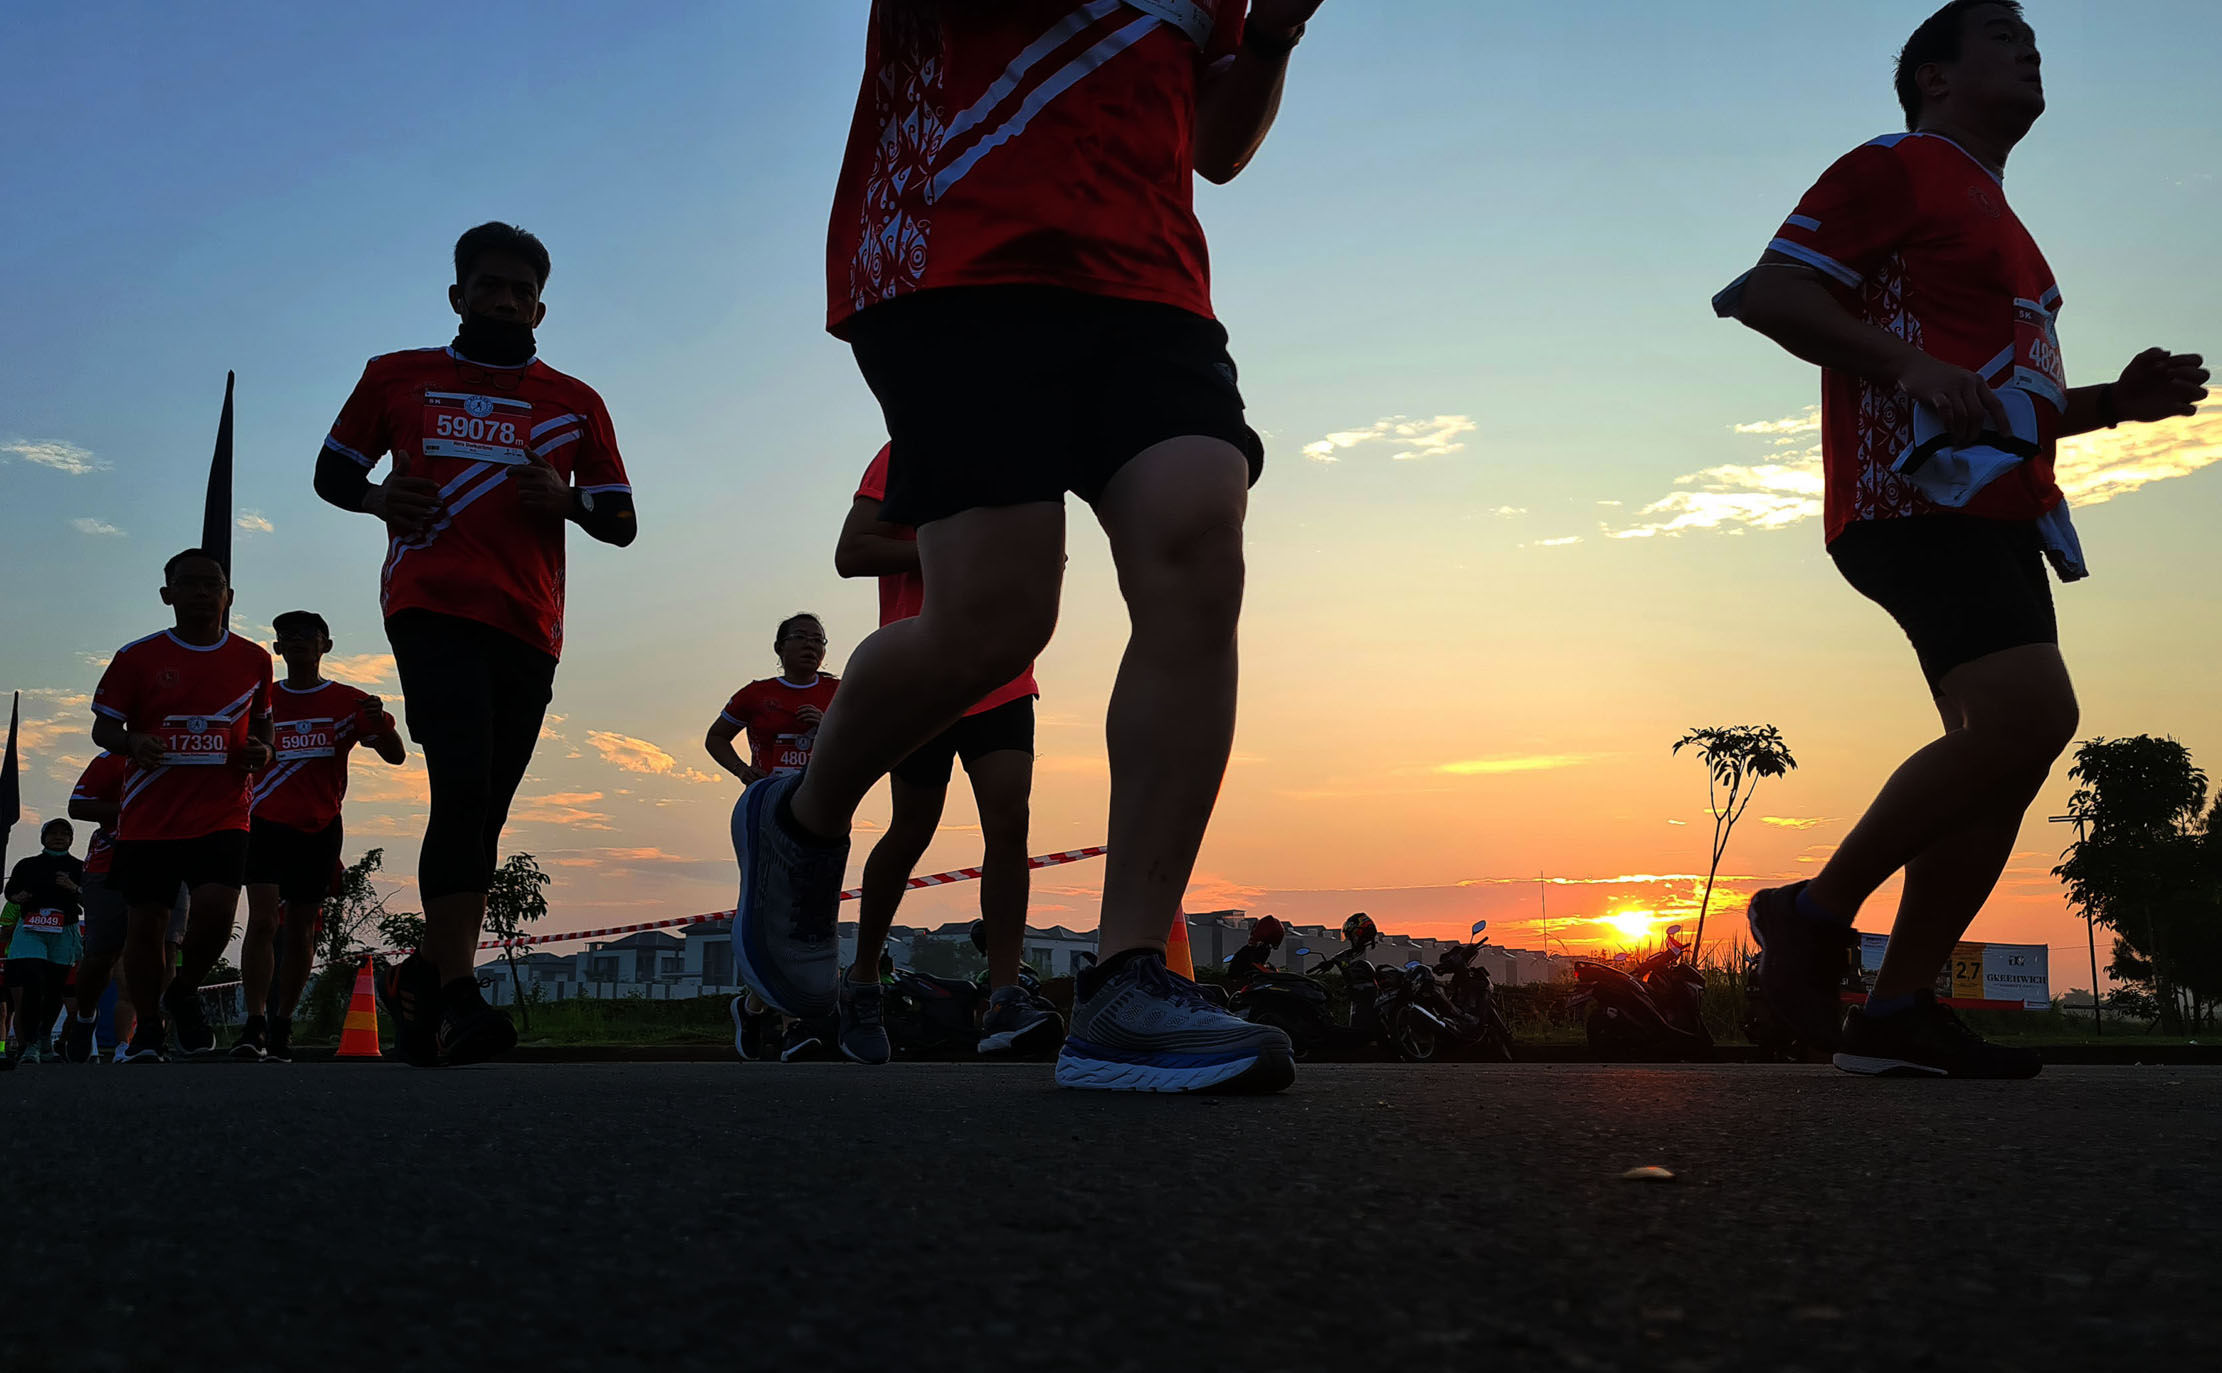 Setelah 2 tahun ditiadakan pelaksanaannya ,jelang hari kemerdekaan ke 77  BFI RUN 2022 kembali digelar dengan peserta 4.000 pelari yang antusias mengikuti lomba di kawasan BSD City Banten,Minggu 14 Agustus 2022. Foto : Panji Asmoro/TrenAsia